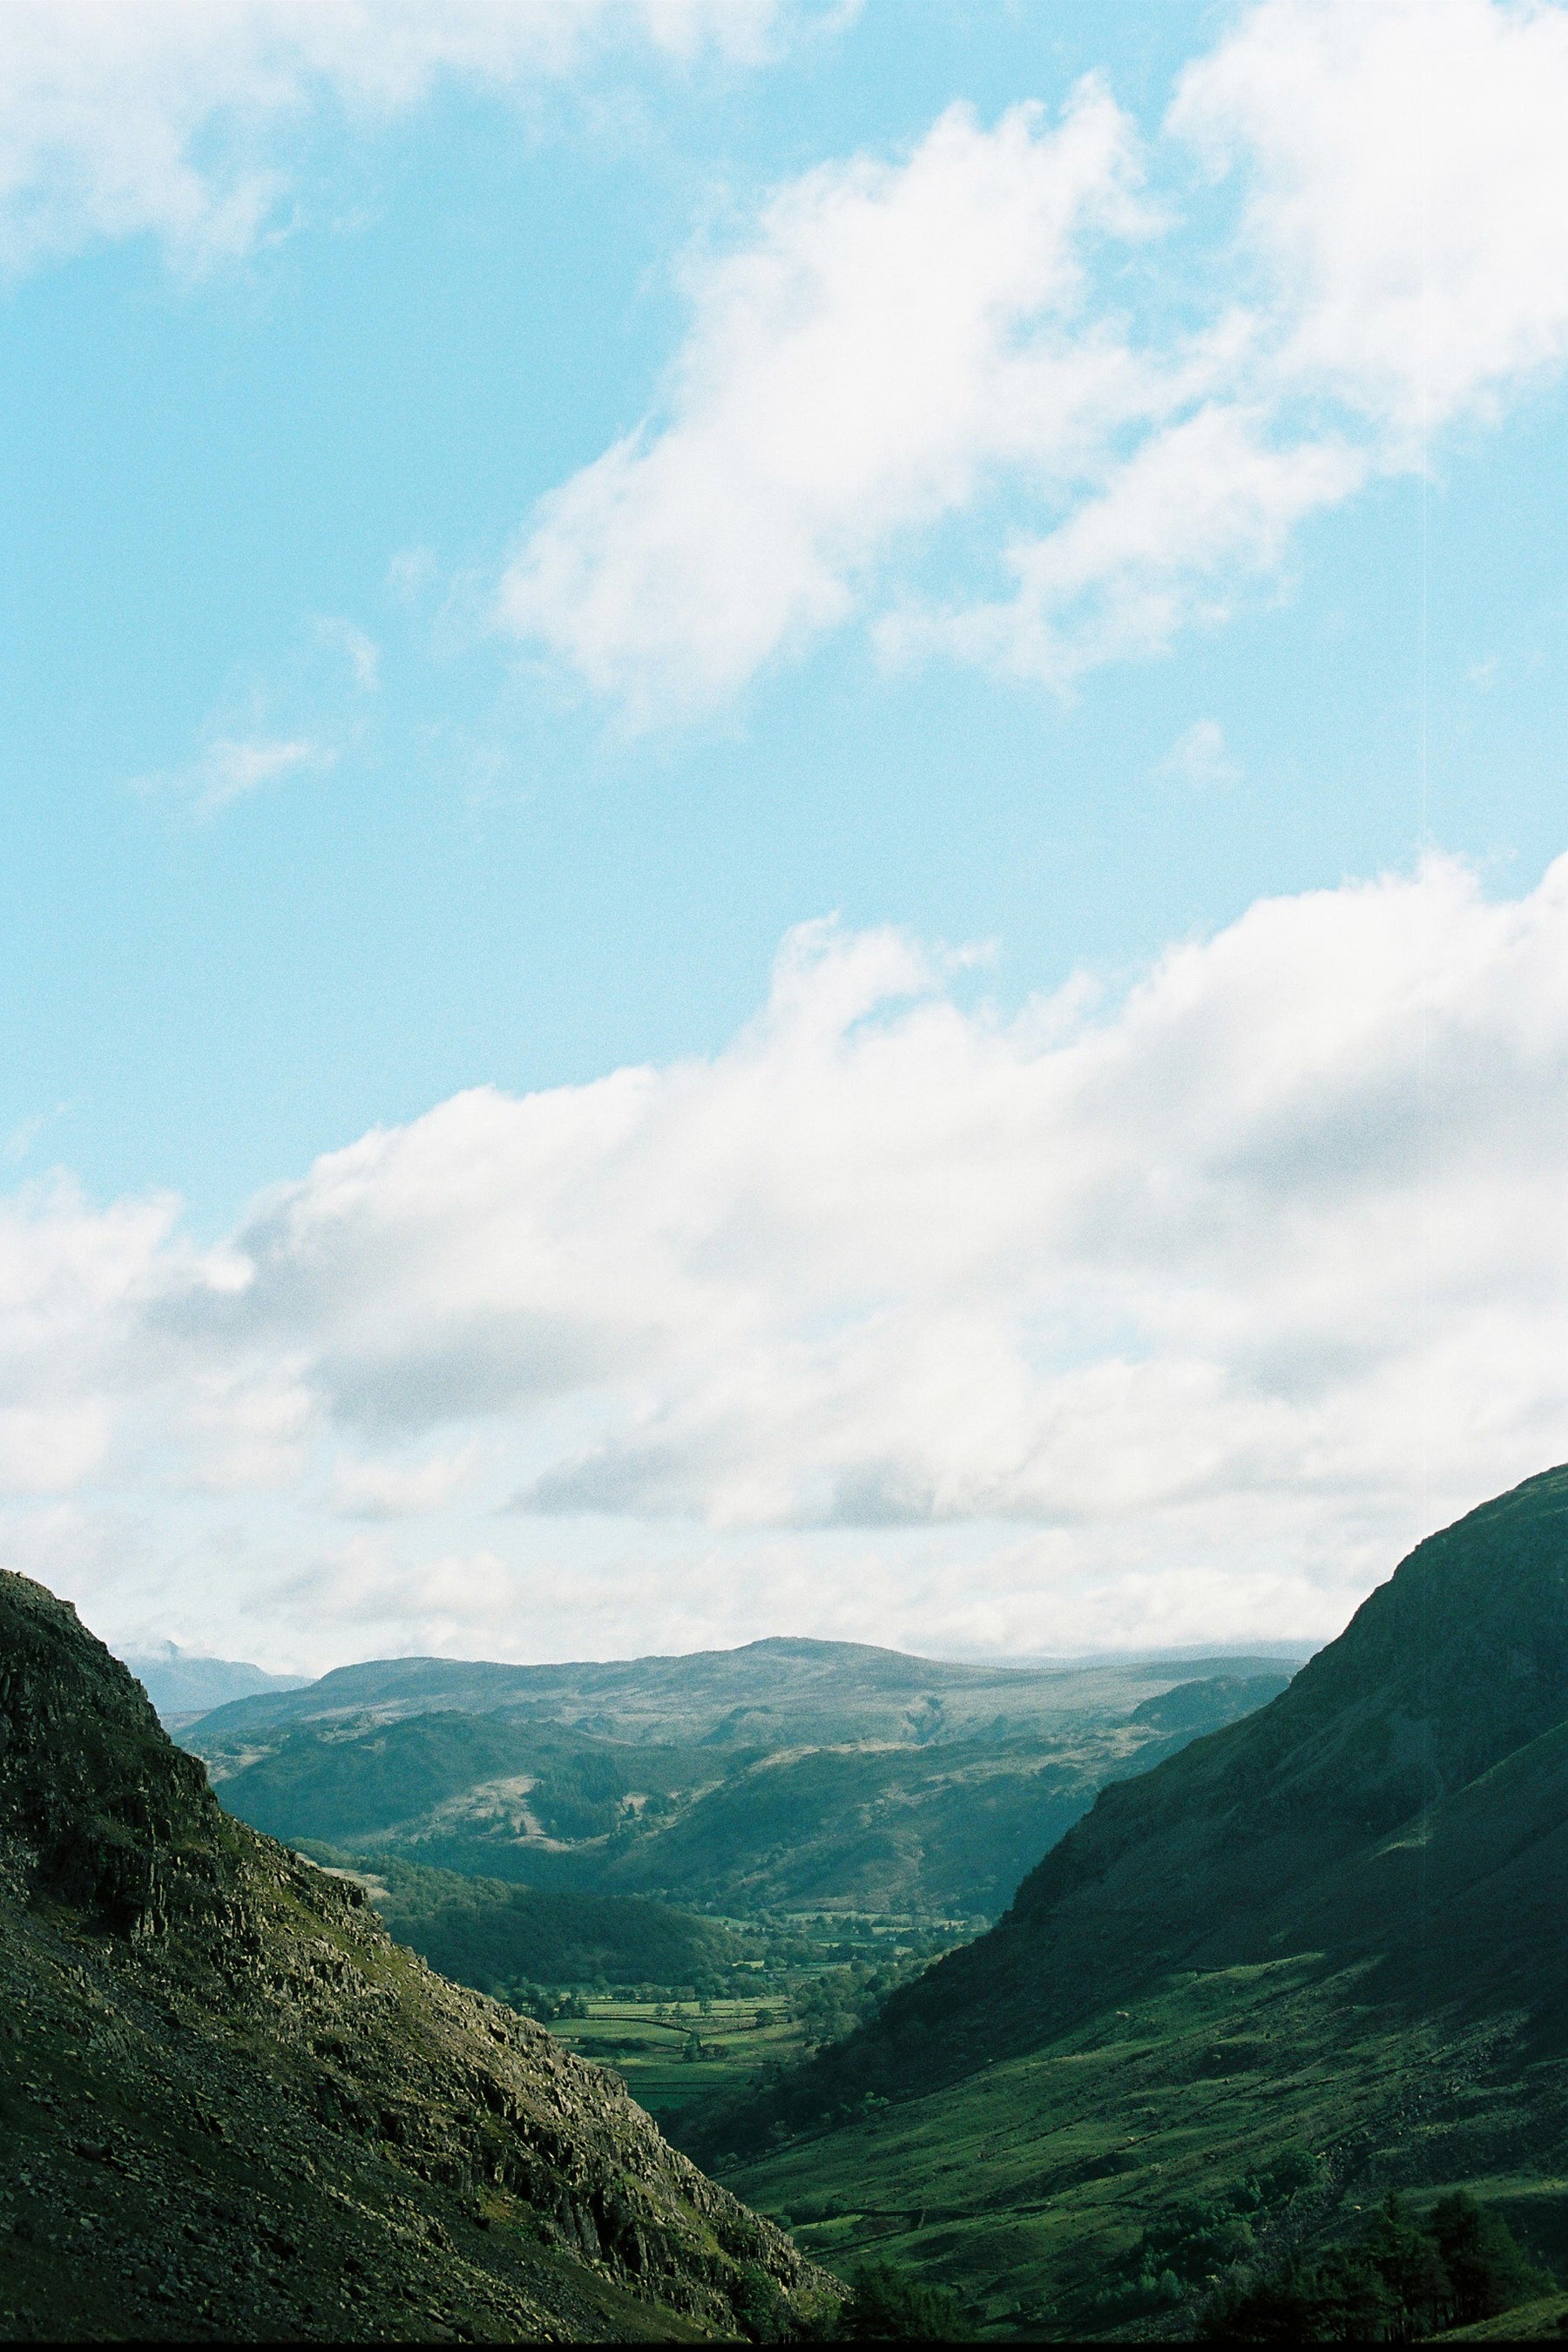 Lake District valley views